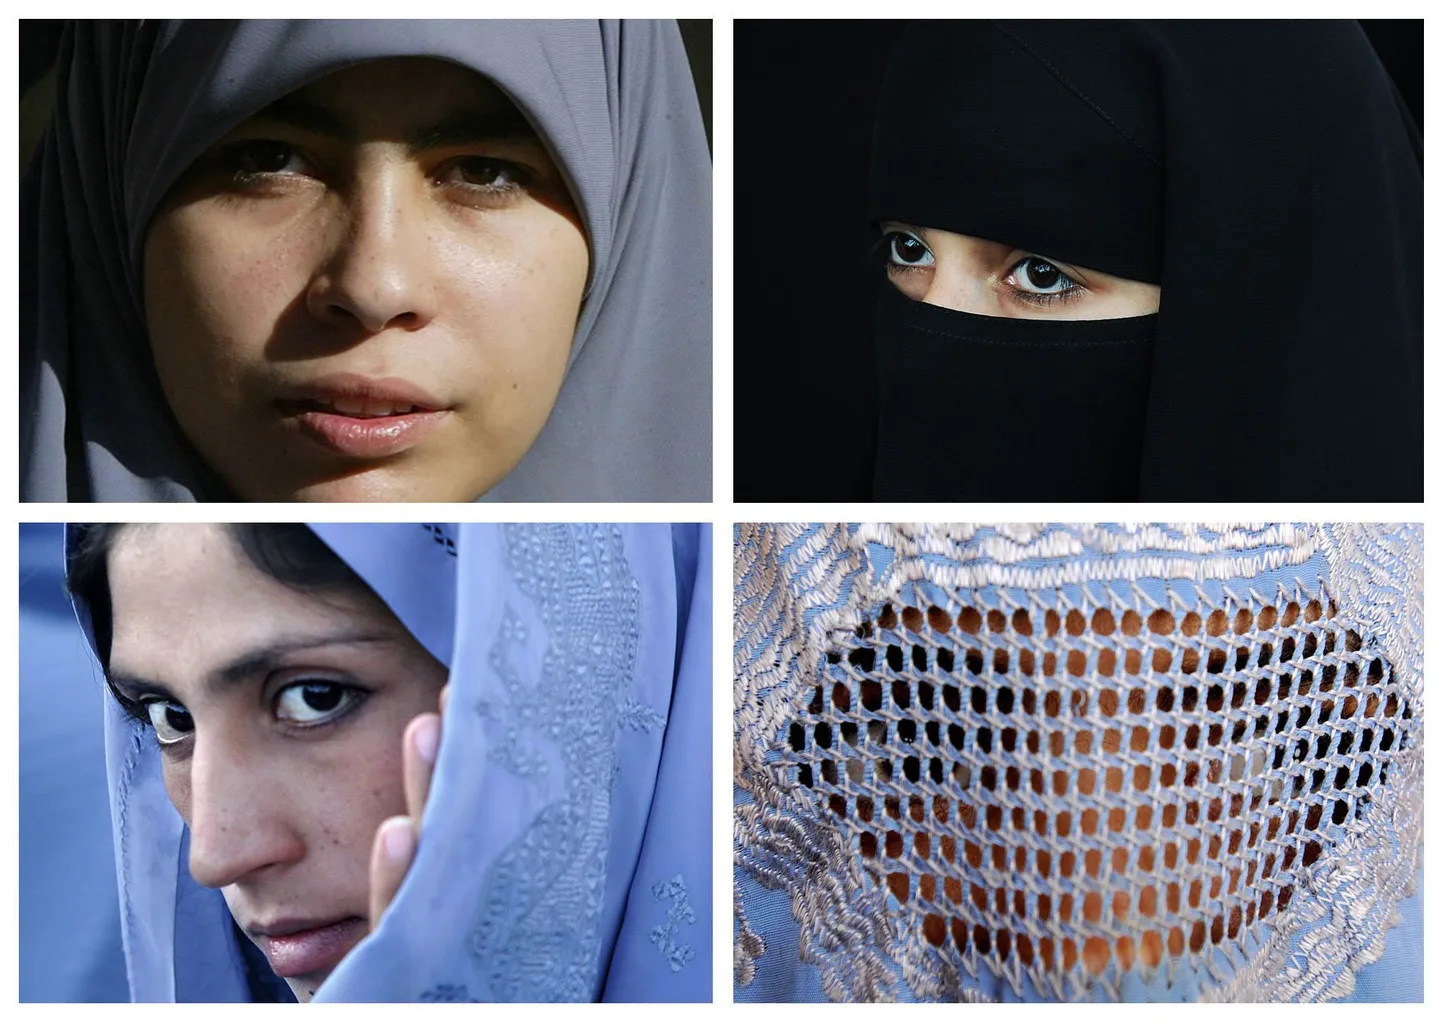 Типы мусульманской женской одежды: в верхнем ряду слева - хиджаб, справа - никаб; в нижнем ряду слева - чадор, справа - паранджа